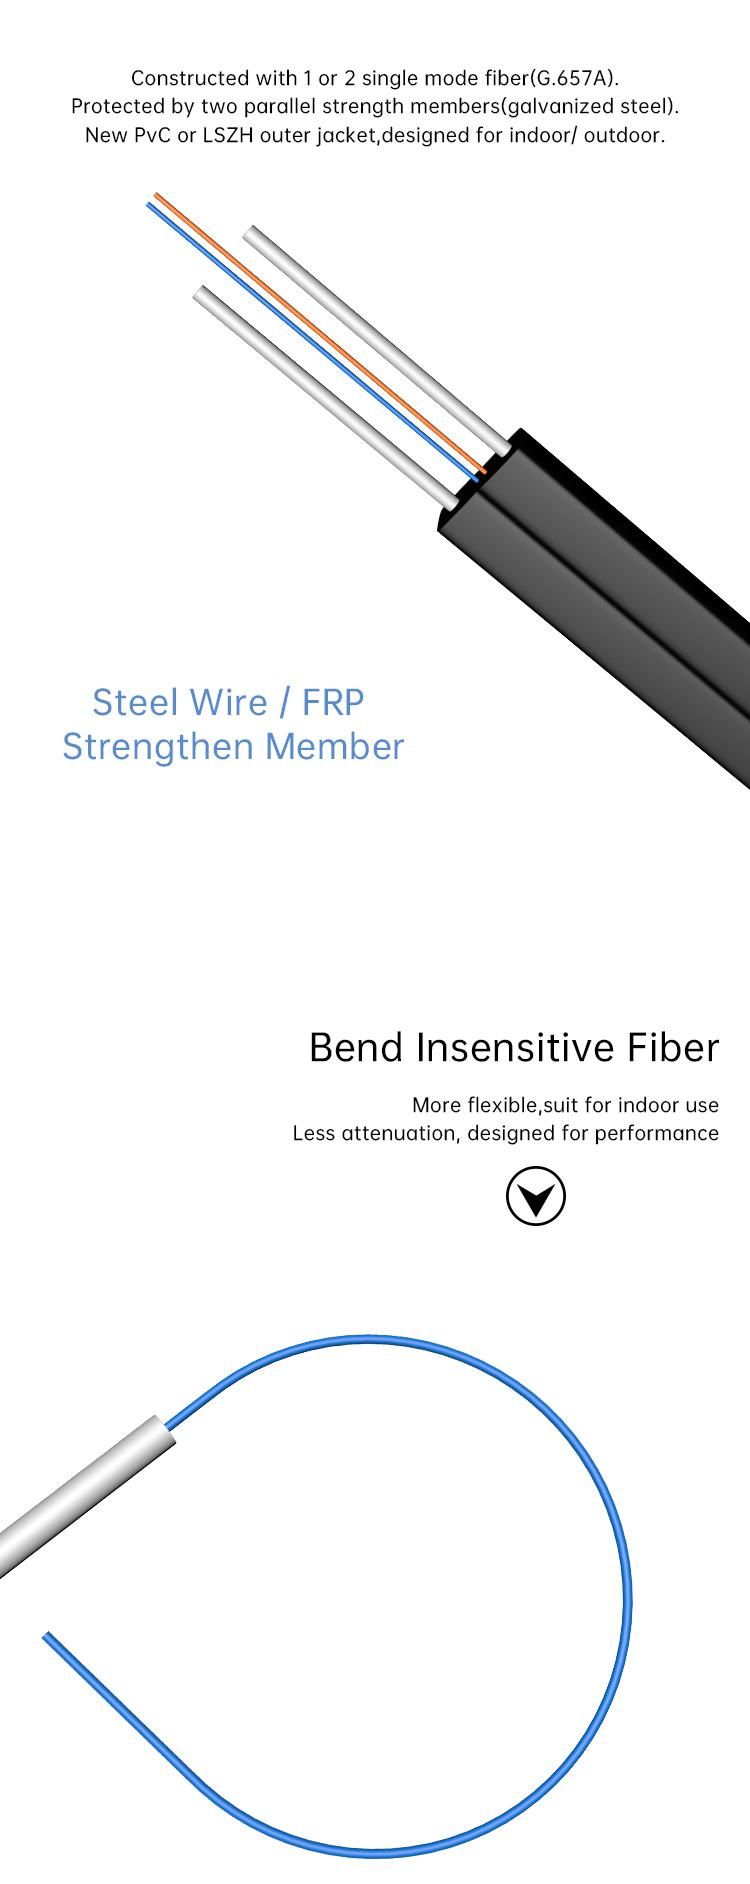 Wholesale Single Core Wire Single-Mode Communication Fibre Drop Cable for FTTH